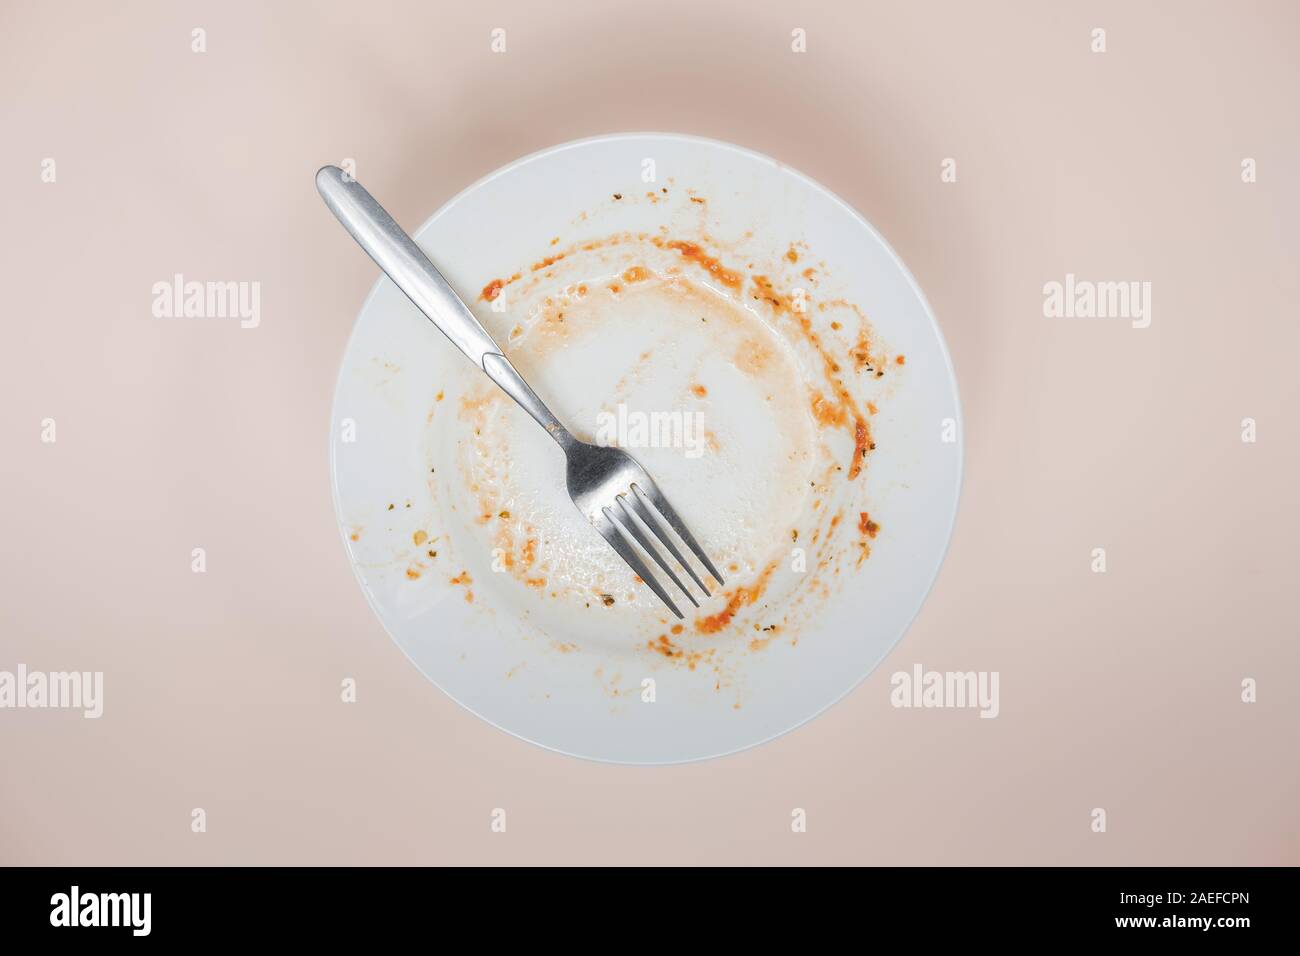 Ein Teller mit Resten von Tomatensauce, Ansicht von oben. Ungewaschen Gerichte illusatration, schmutzige Teller auf hellen Hintergrund Stockfoto